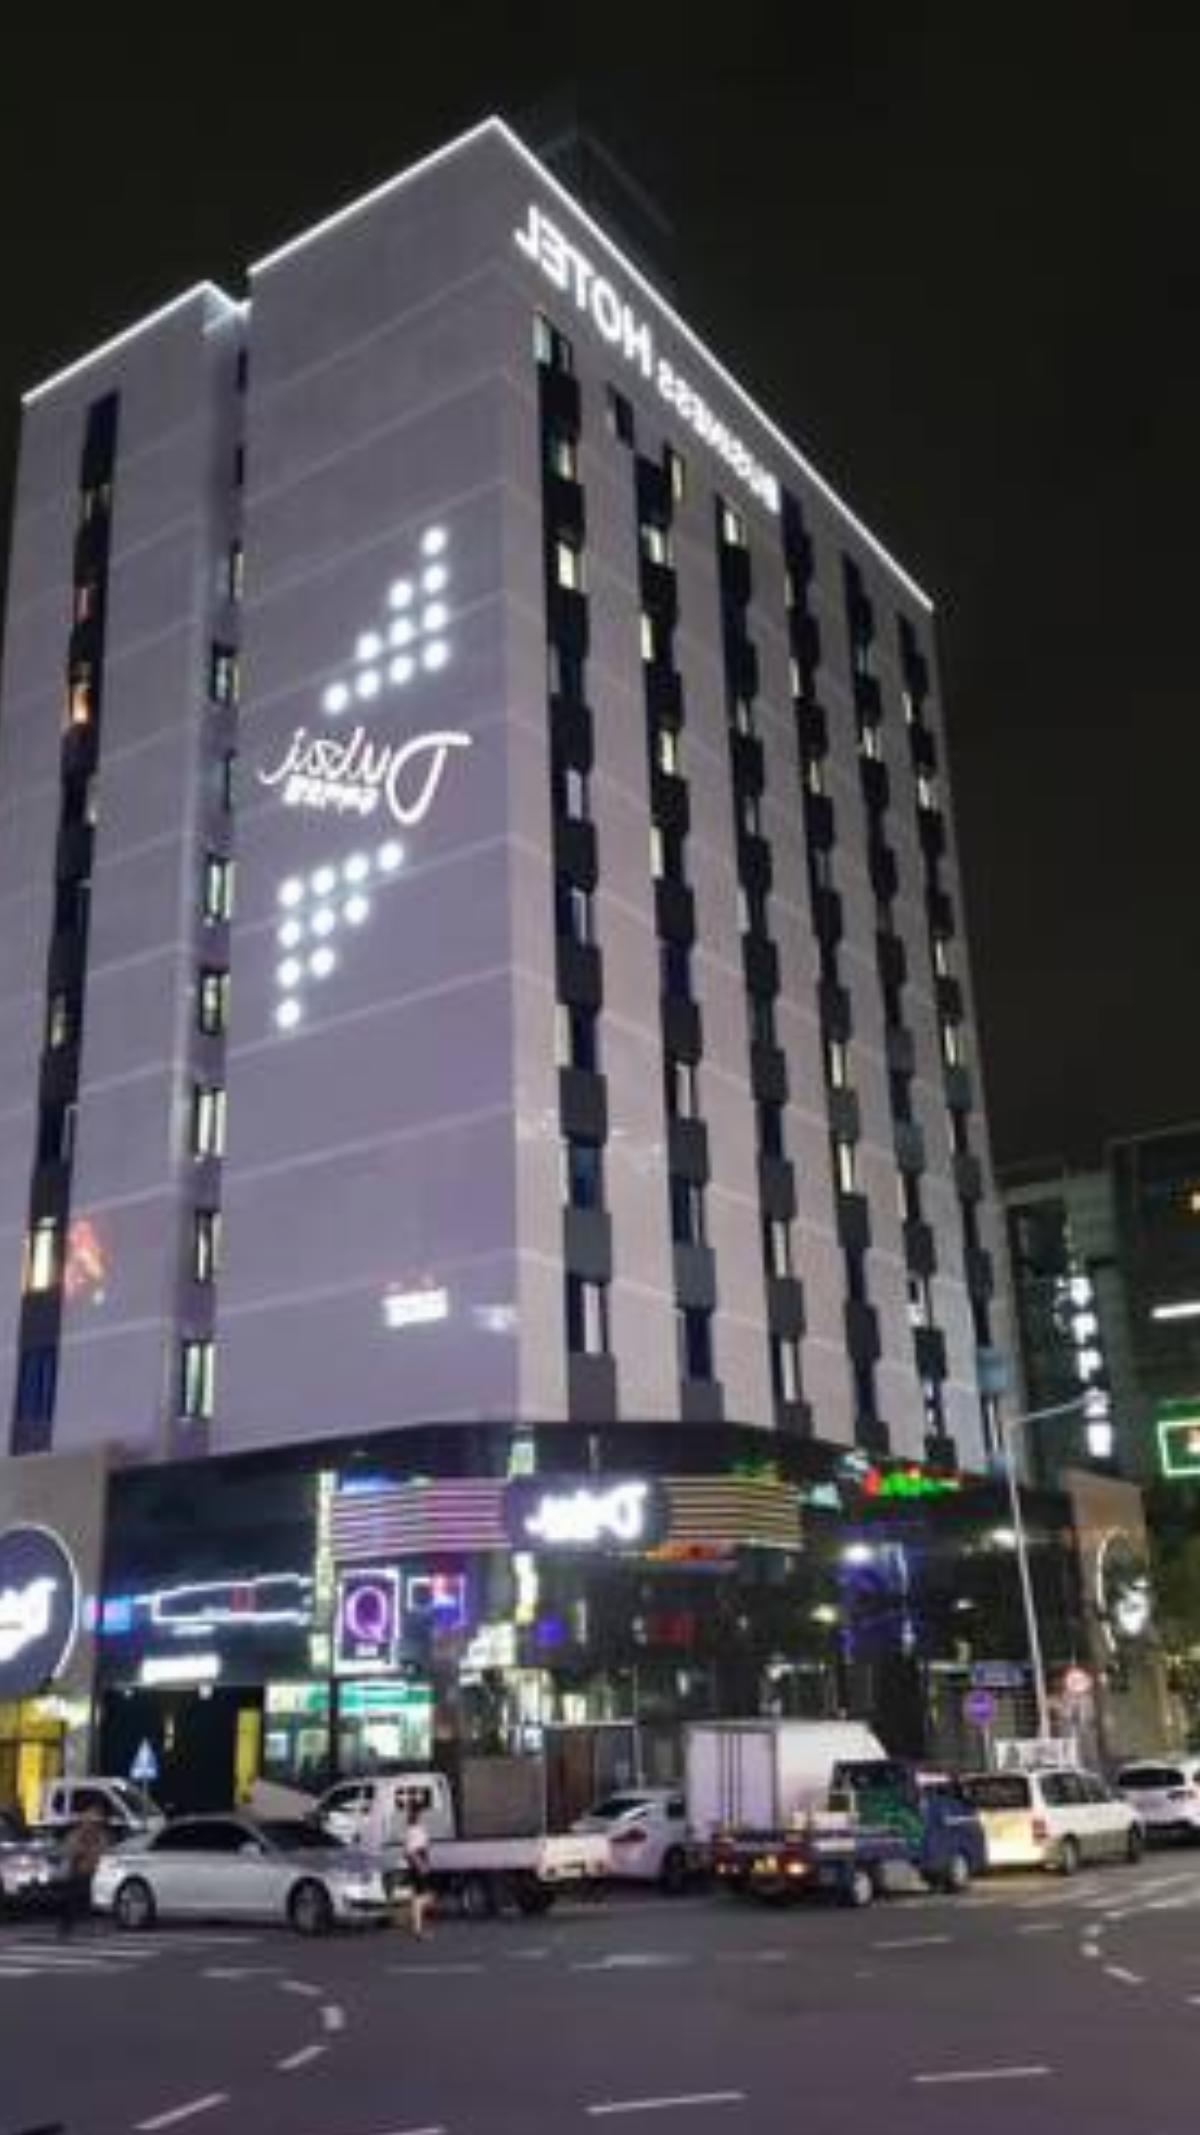 Dubai Hotel Hotel Gwangju South Korea